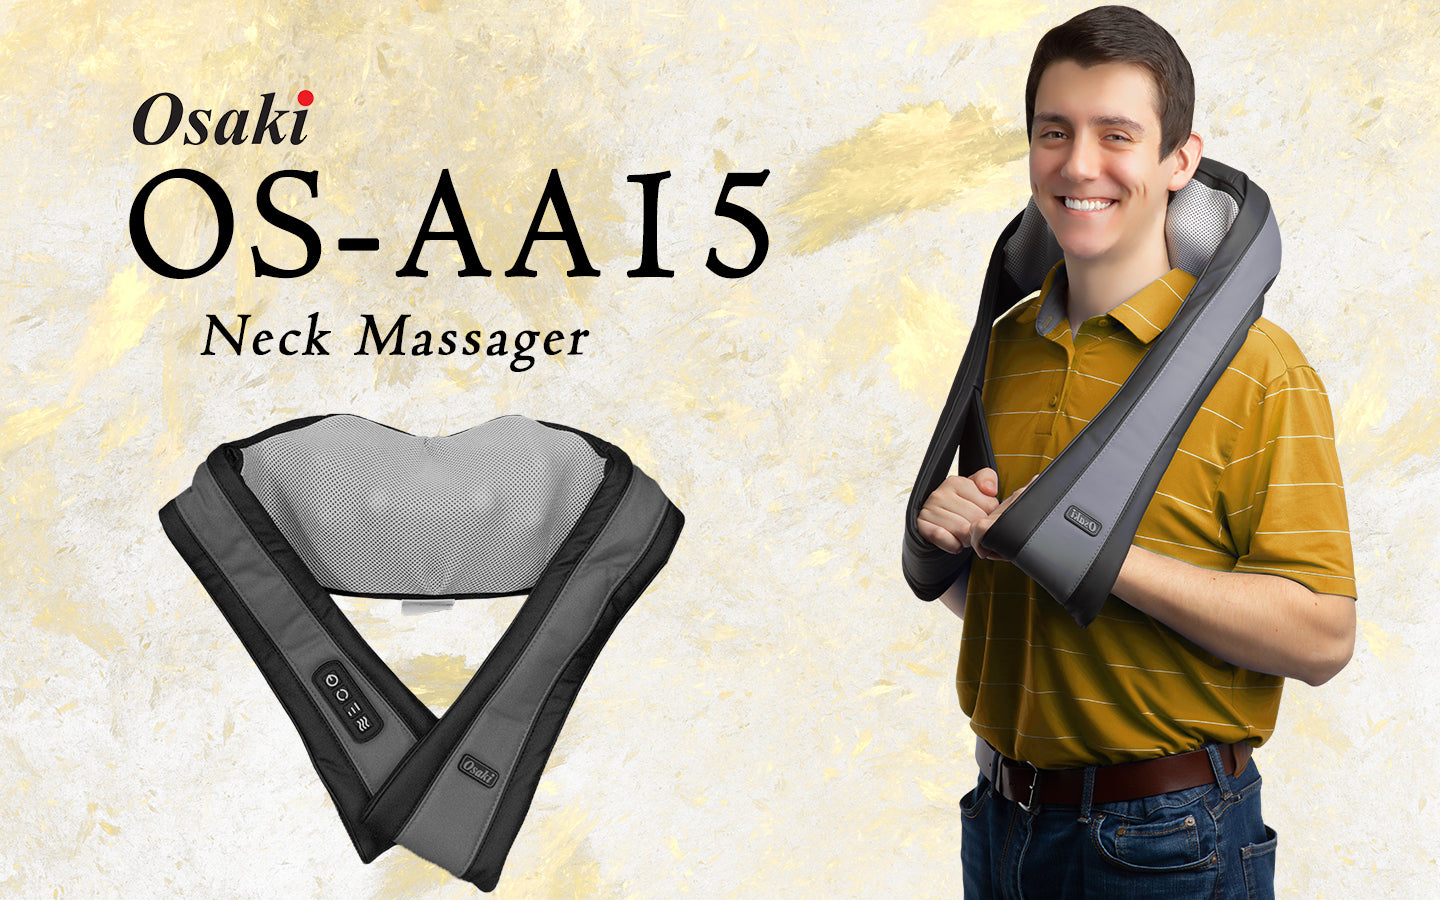 OS-AA15 Neck Massager